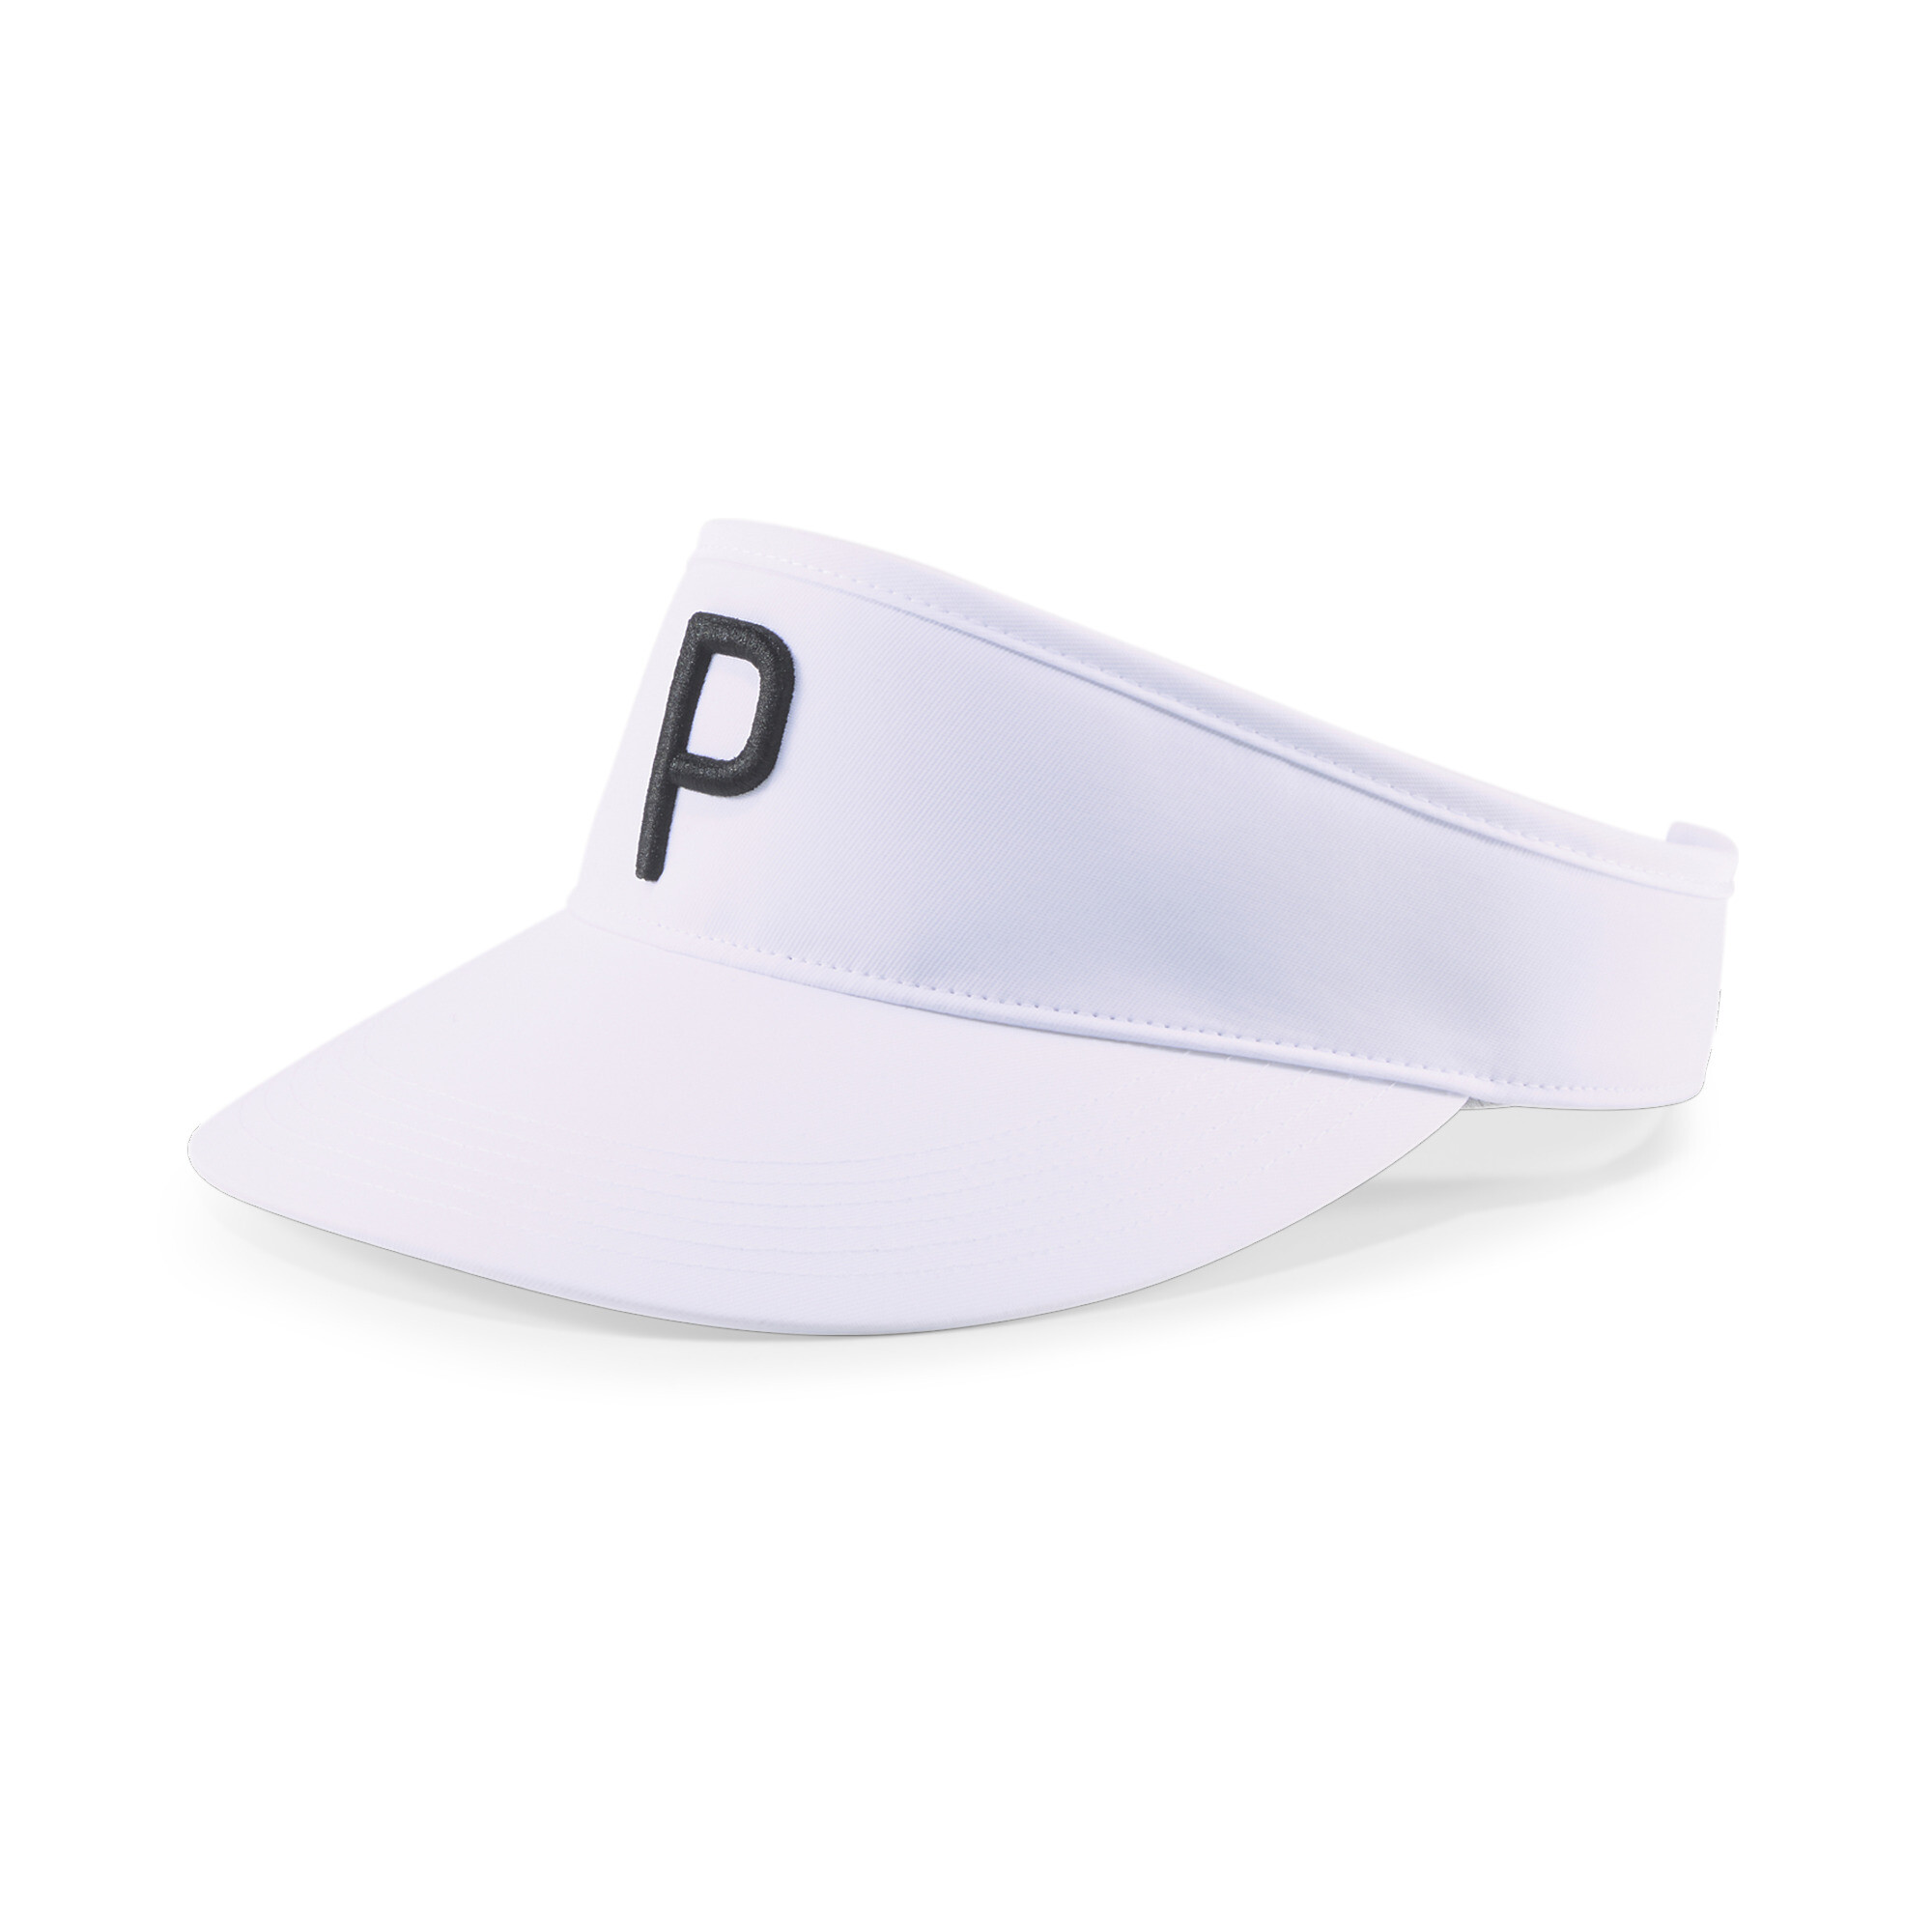  プーマ メンズ ゴルフ P アジャスタブル バイザー メンズ Bright White-Puma Black ｜PUMA.com